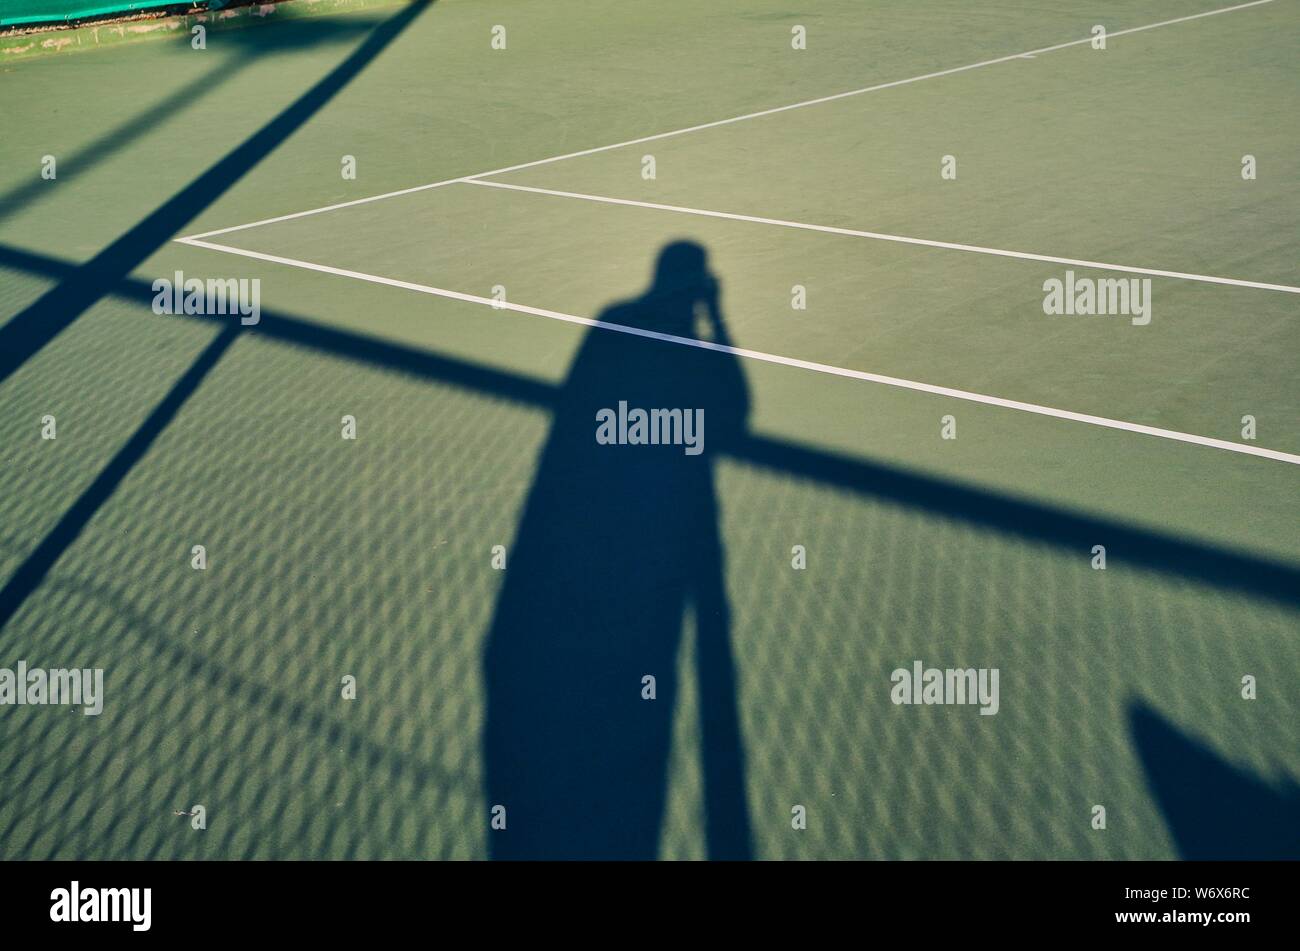 Schatten einer sportphotographer kontrastierenden auf einem Tennisplatz Stockfoto